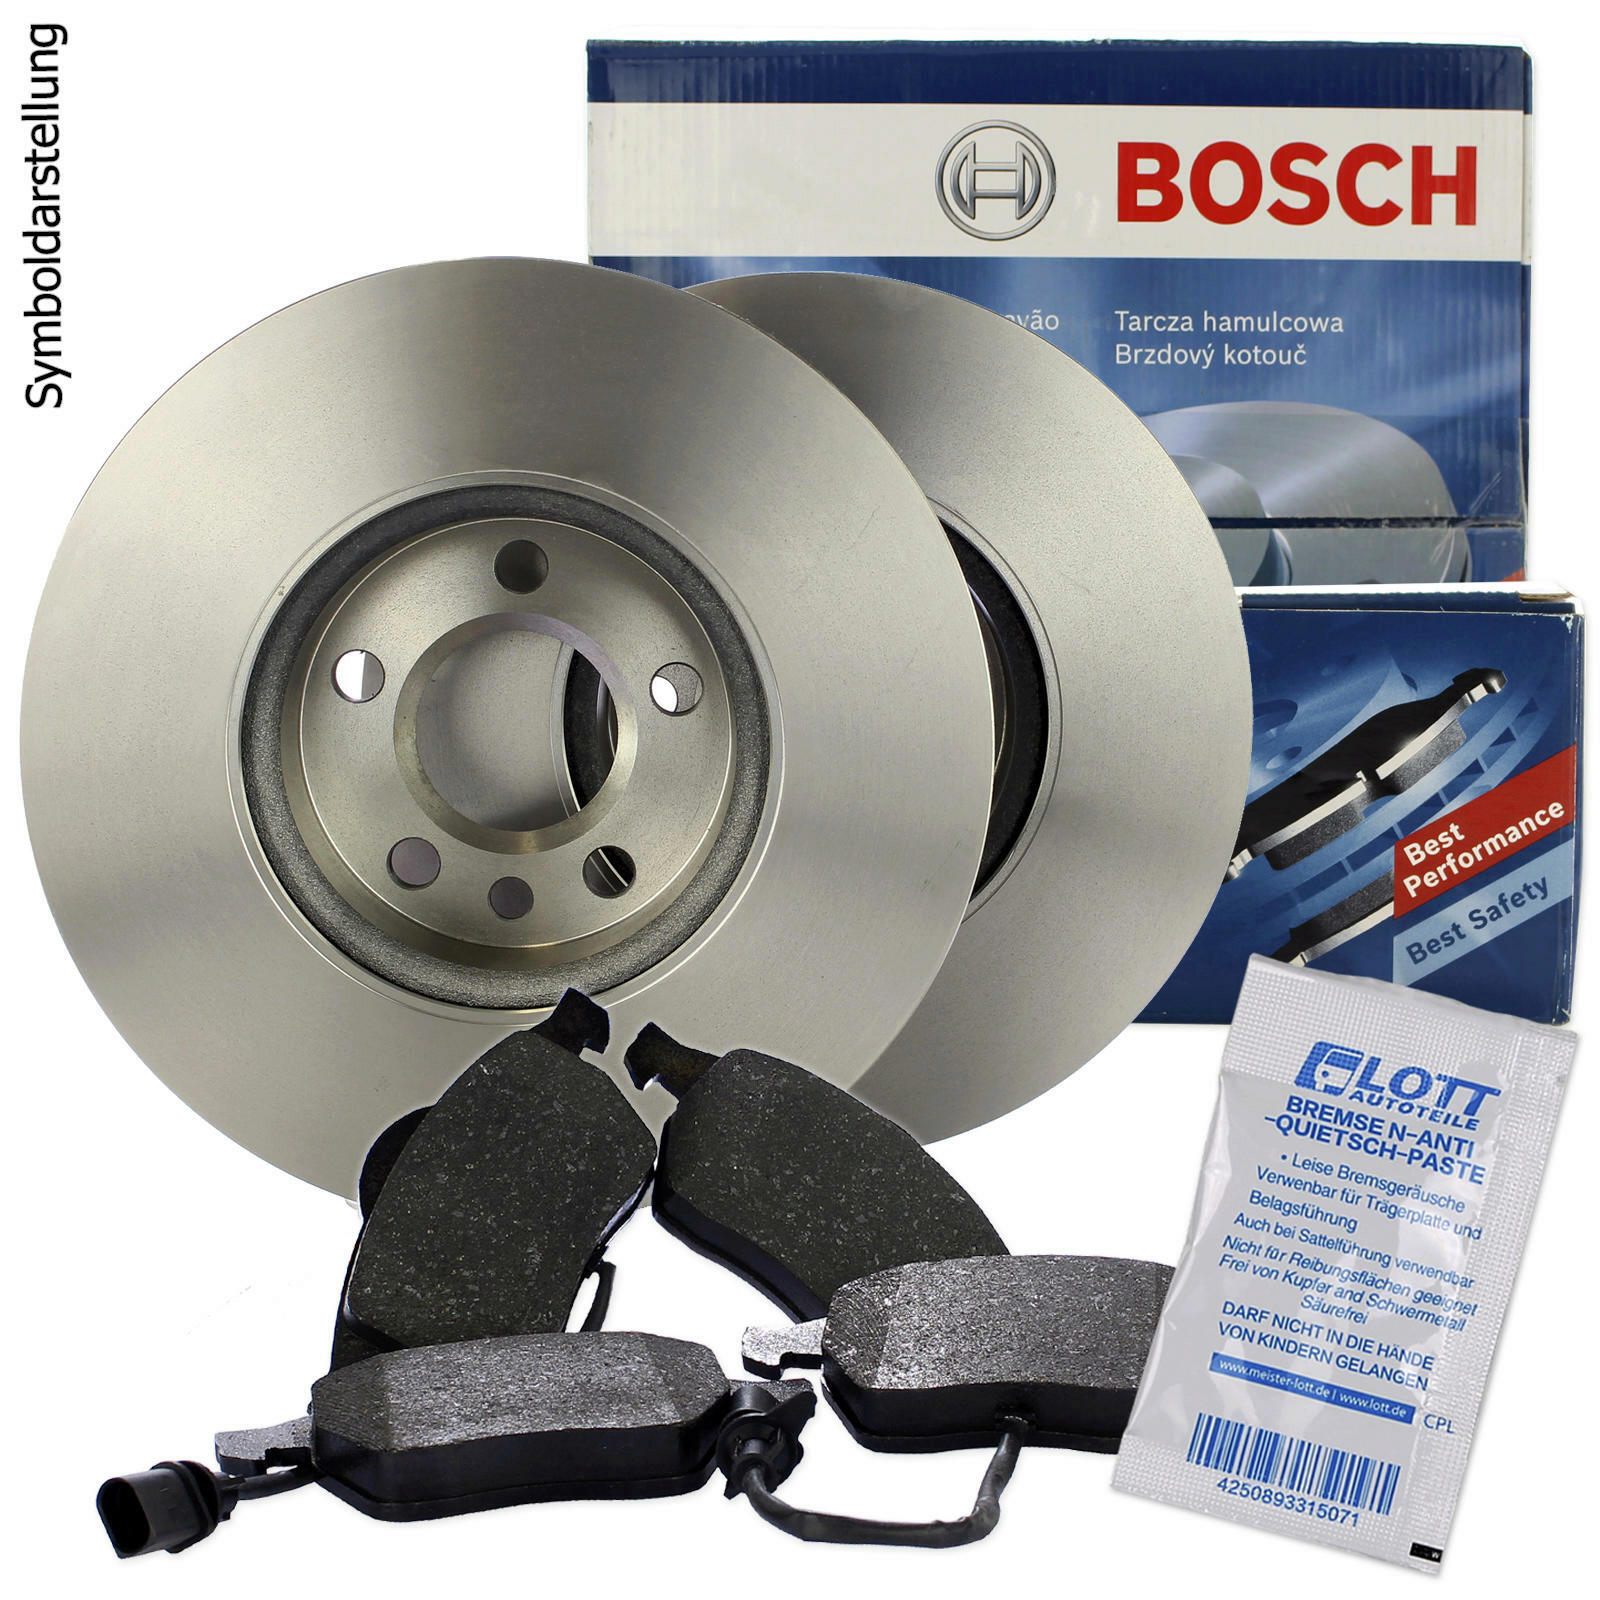 BOSCH Bremsscheiben + Bosch Bremsbeläge + BOSCH Warnkontakt